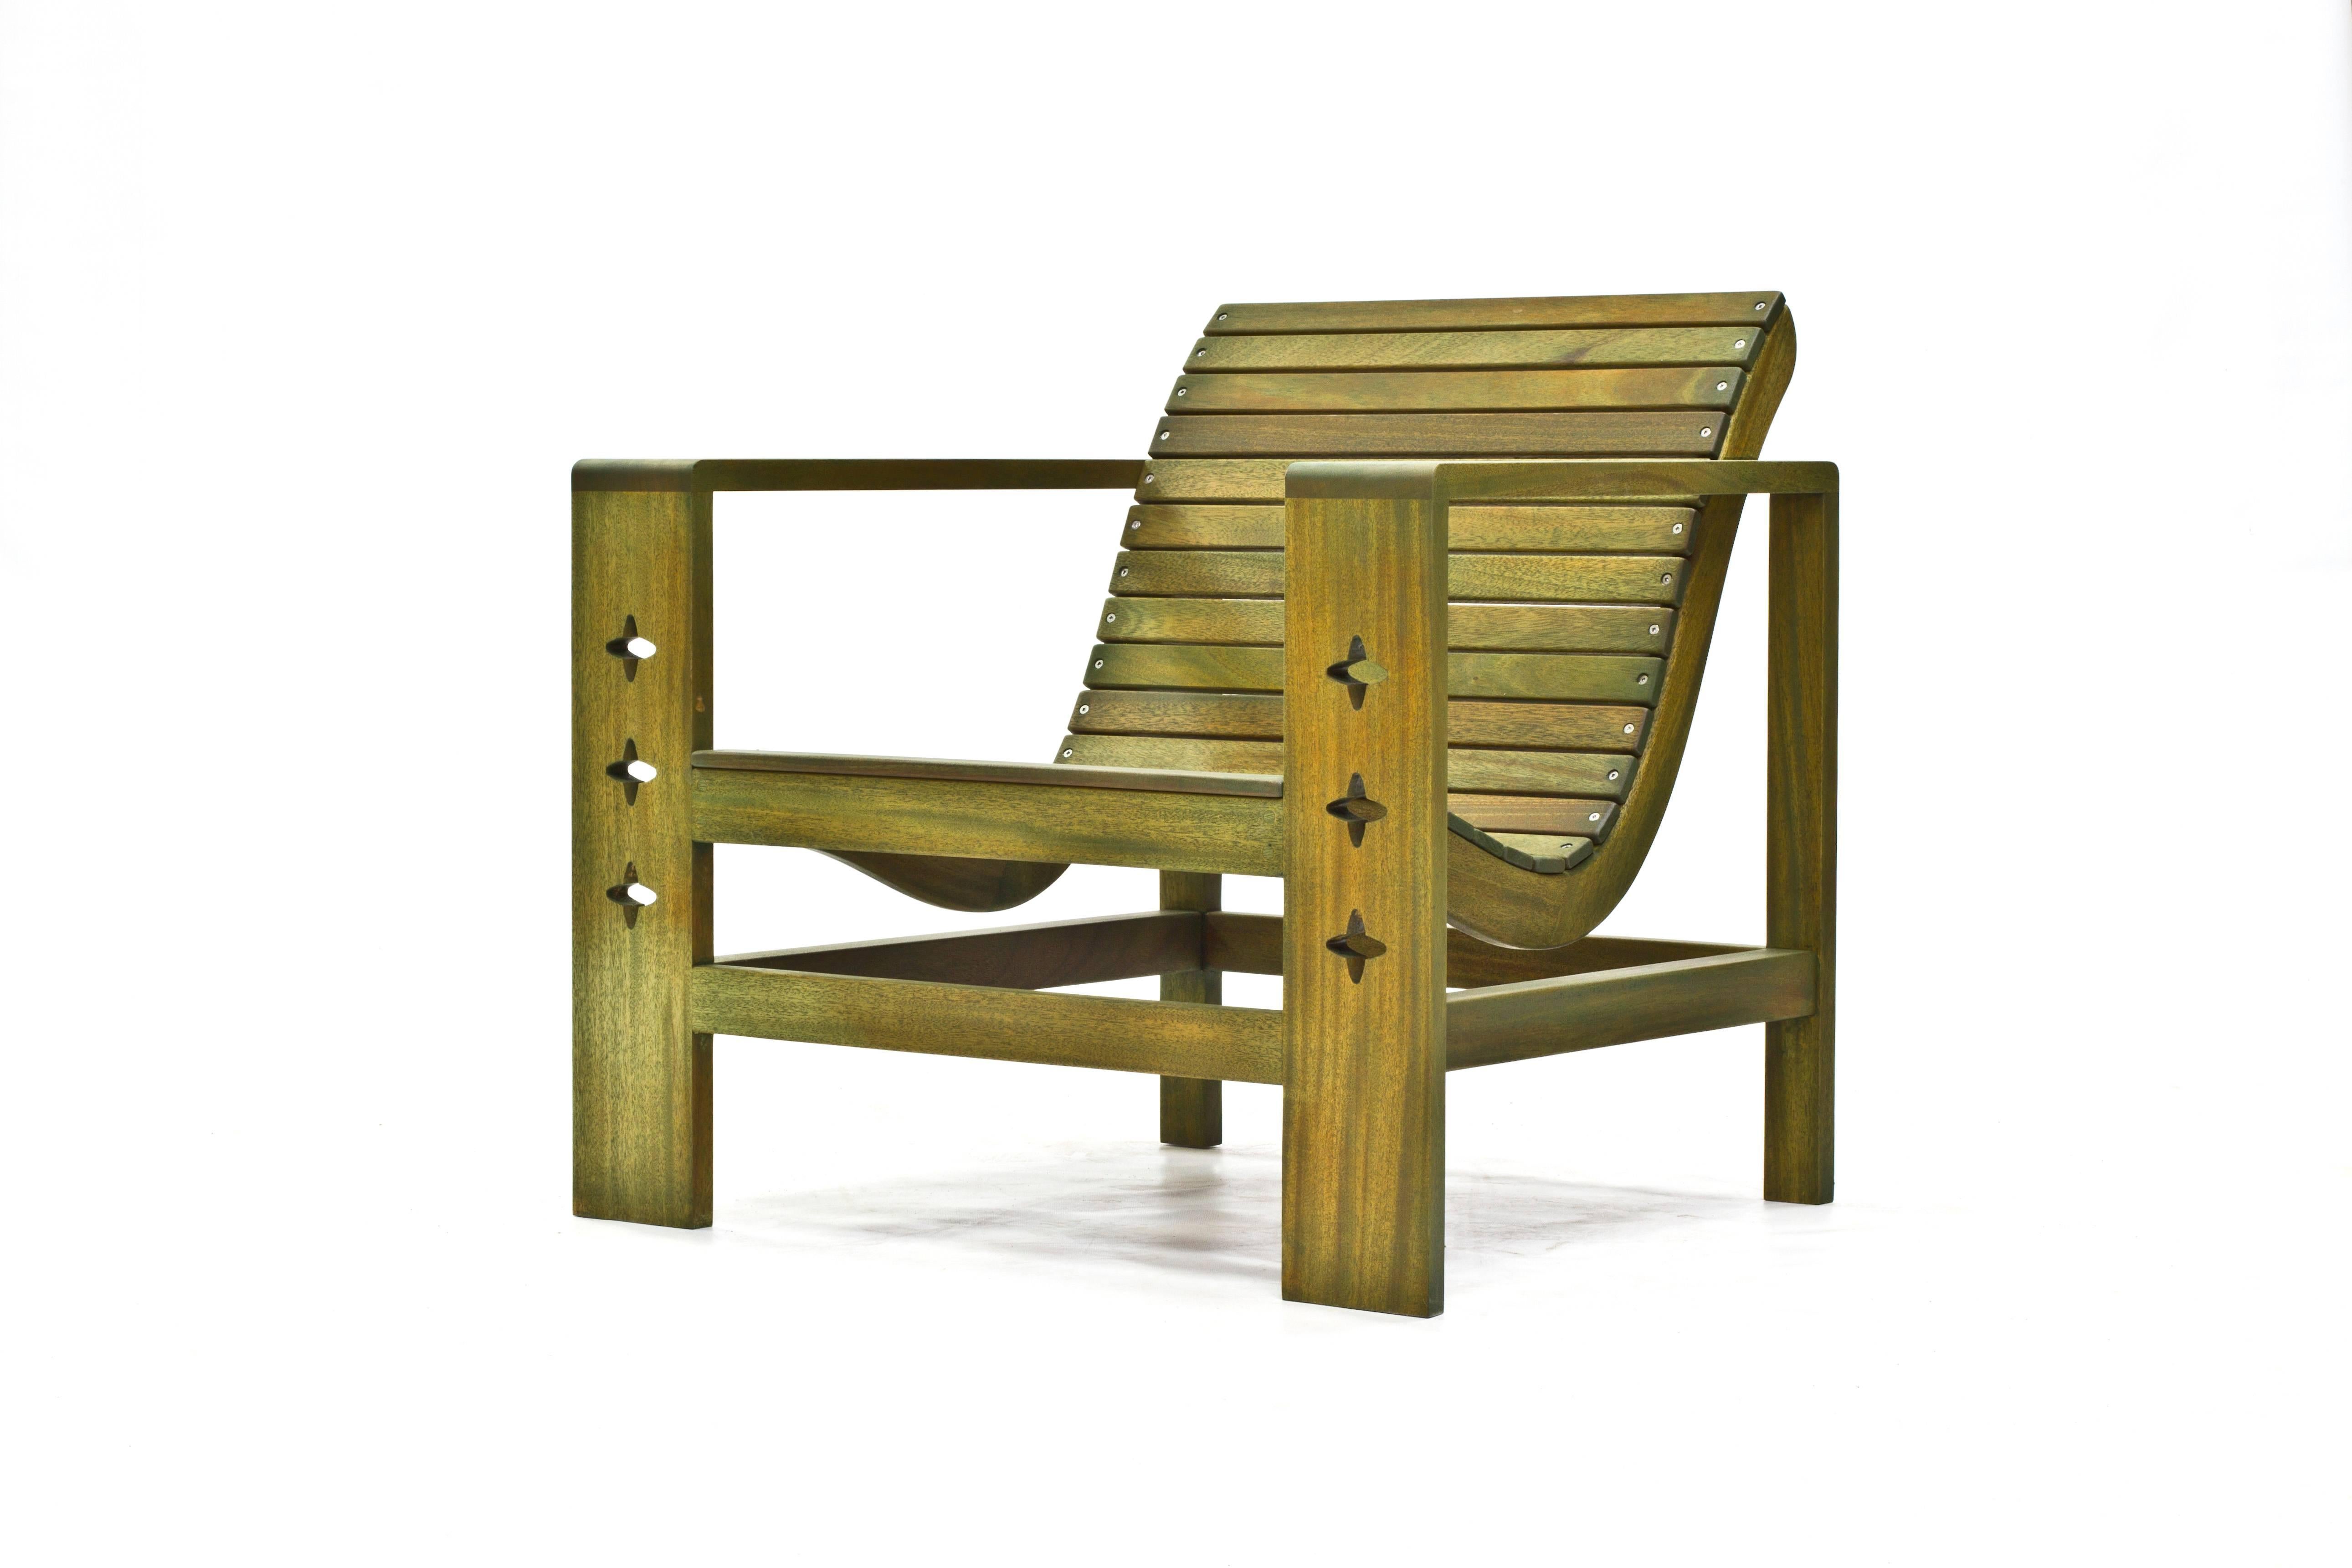 Der Uti-Stuhl wurde von den Linien eines klassischen Designs aus der Mitte des Jahrhunderts inspiriert, das wir in einem stark verfallenen Zustand entdeckt haben. Mit einigen Änderungen hat das Wooda-Team dieses Design verjüngt und den Stuhl wieder